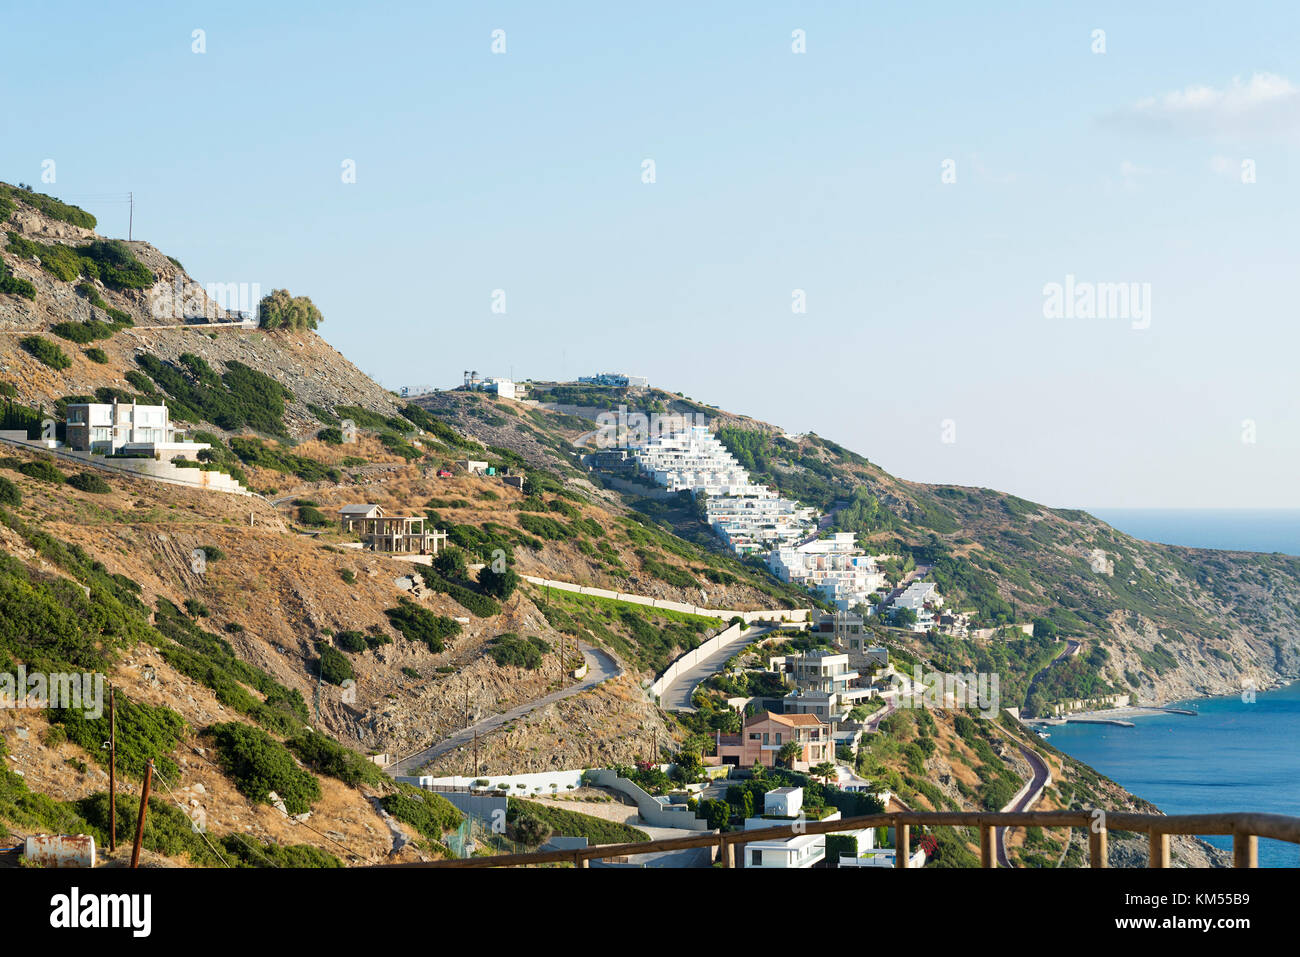 La casa en la colina de la isla de Creta. día soleado, buen tiempo. Foto de stock